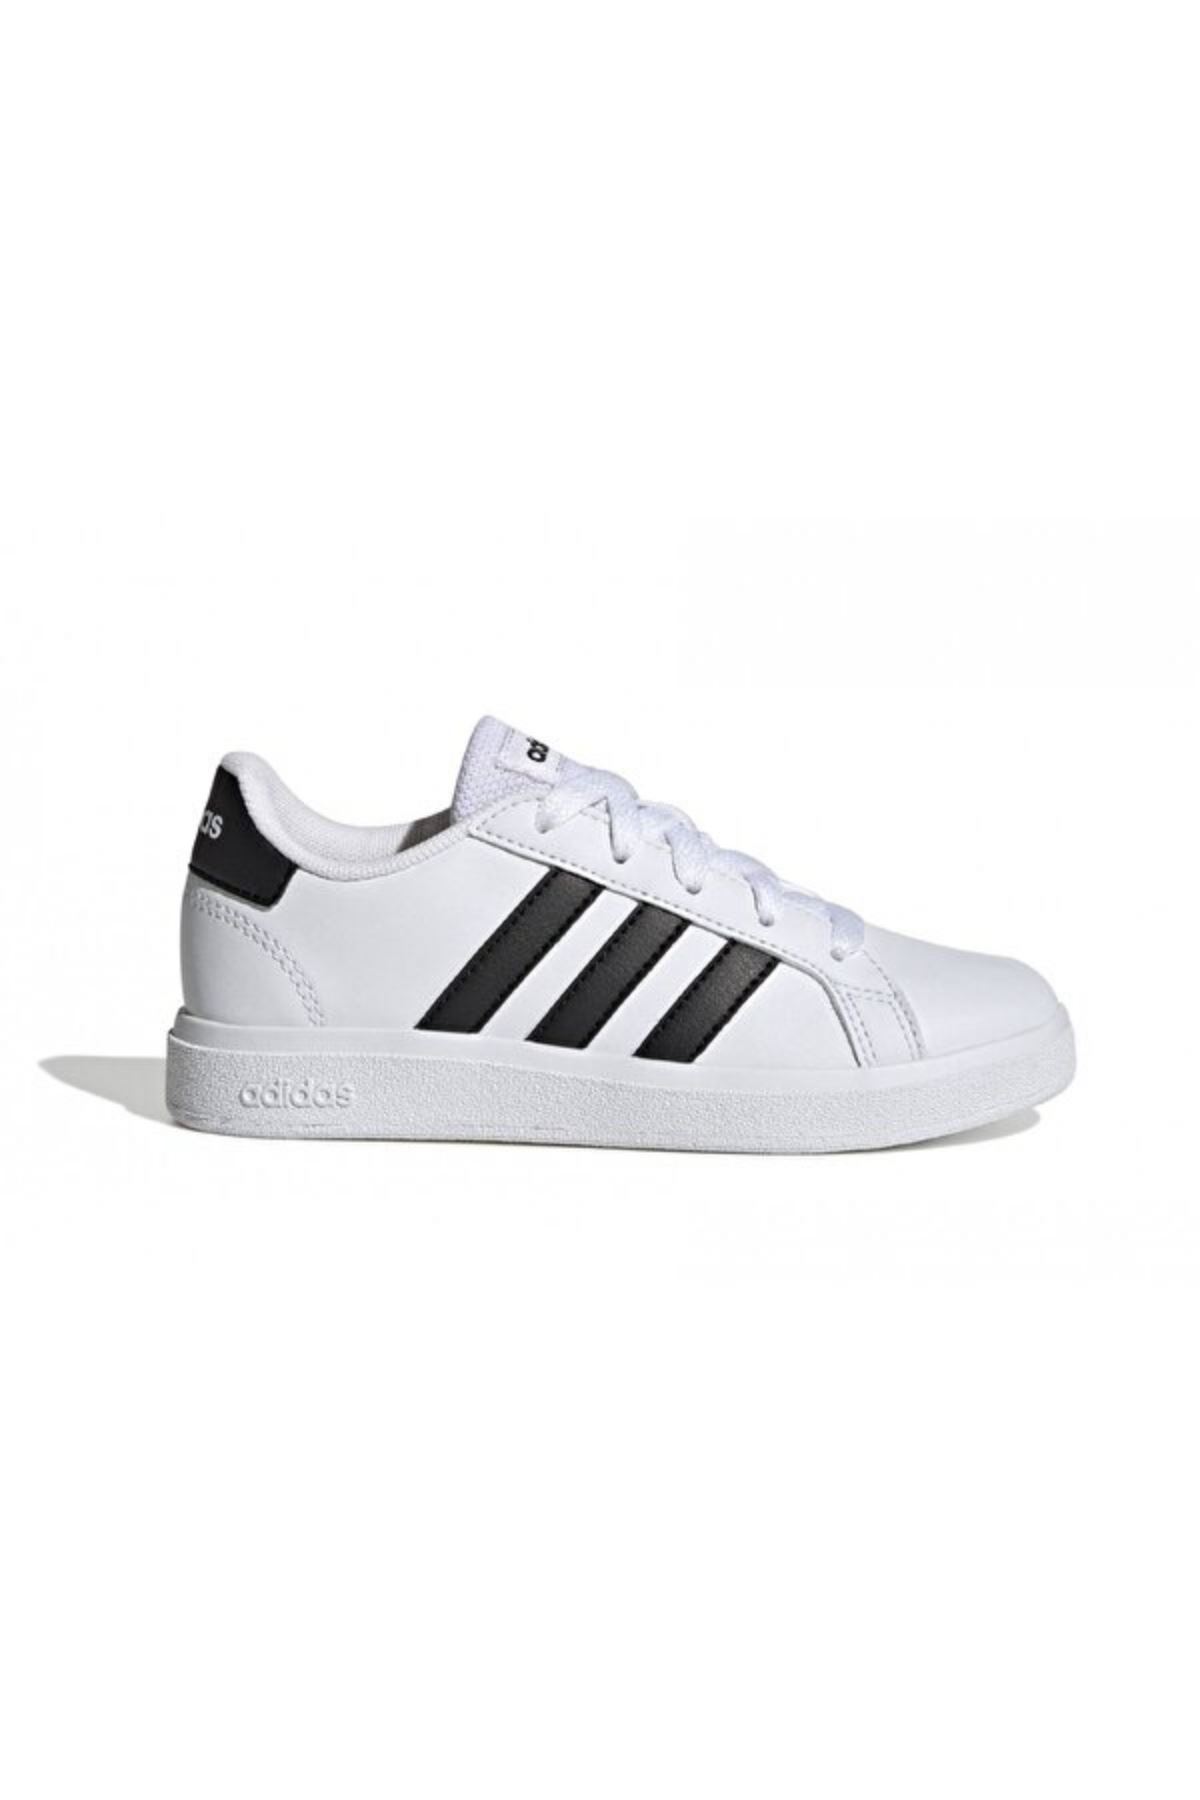 Adidas Grand Court 2.0 Erkek Çocuk Beyaz Spor Ayakkabı - GW6511